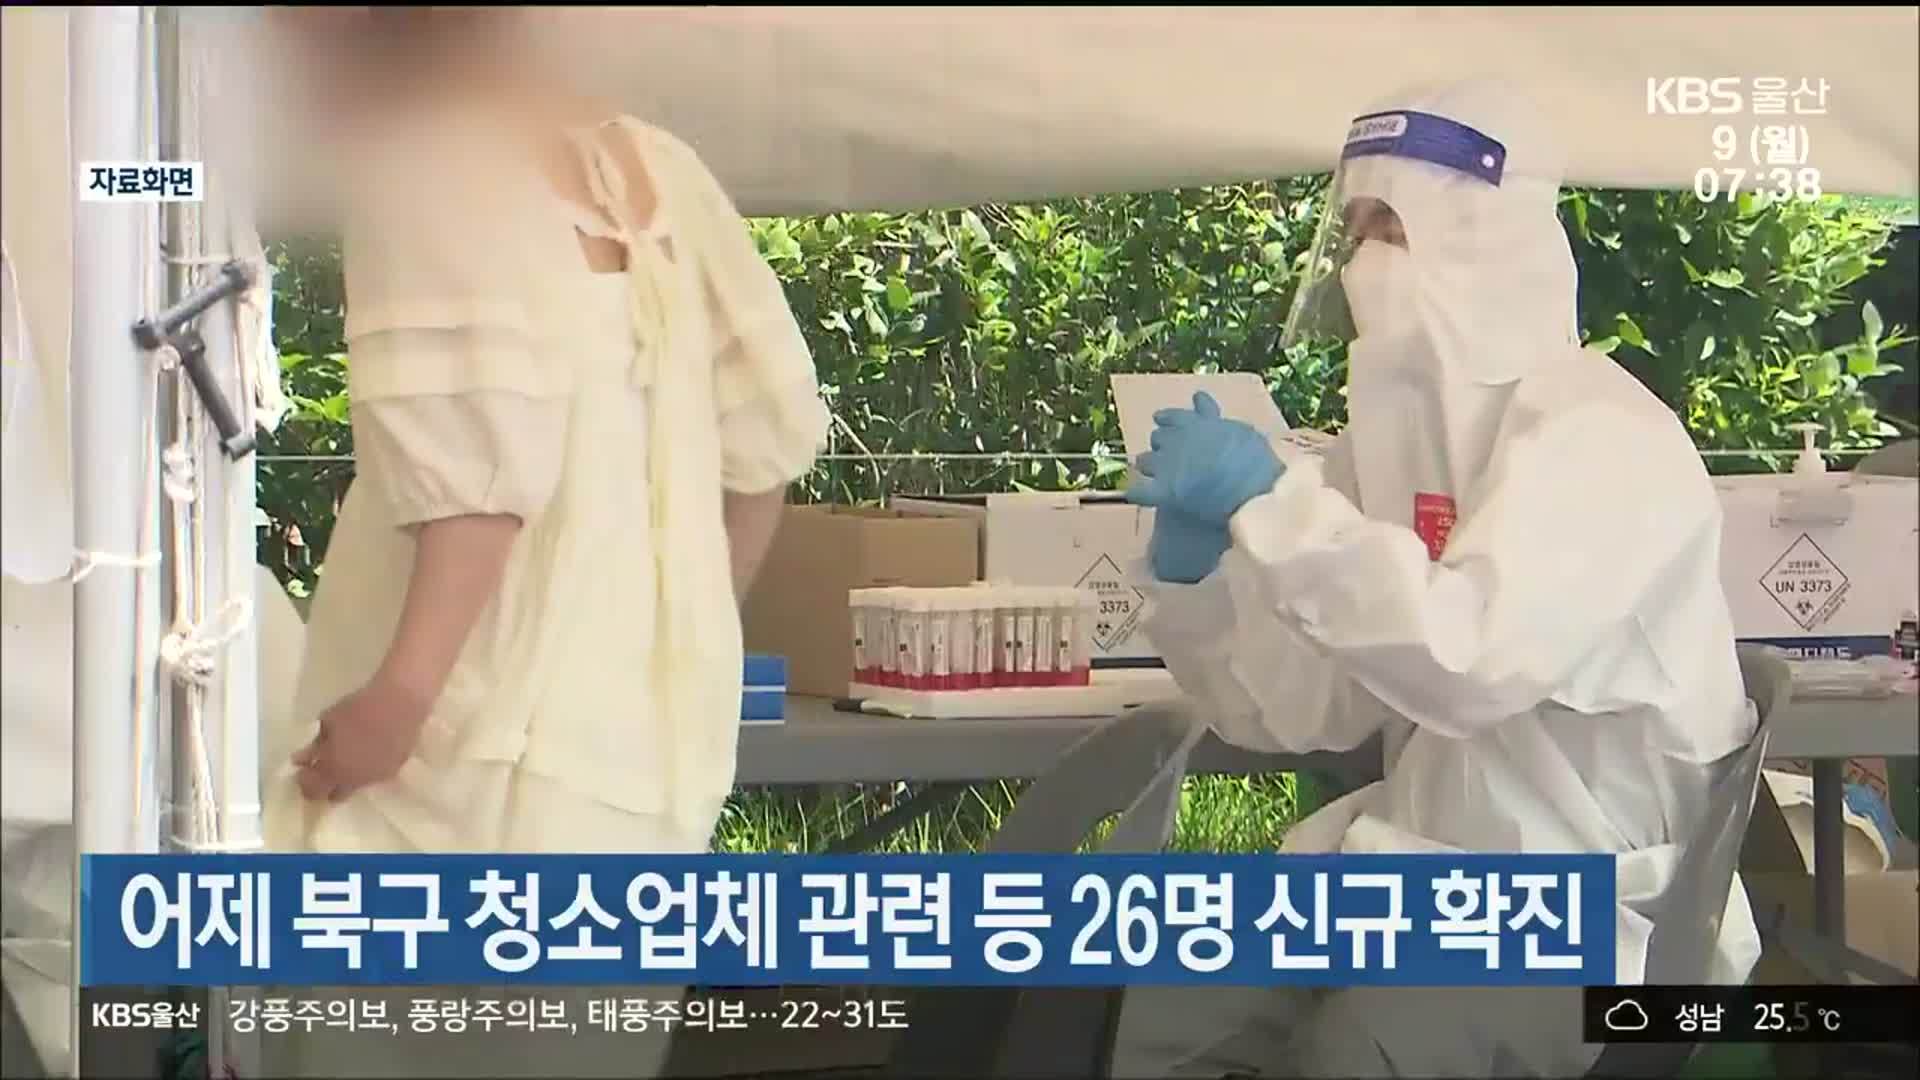 어제 울산 북구 청소업체 관련 등 26명 신규 확진